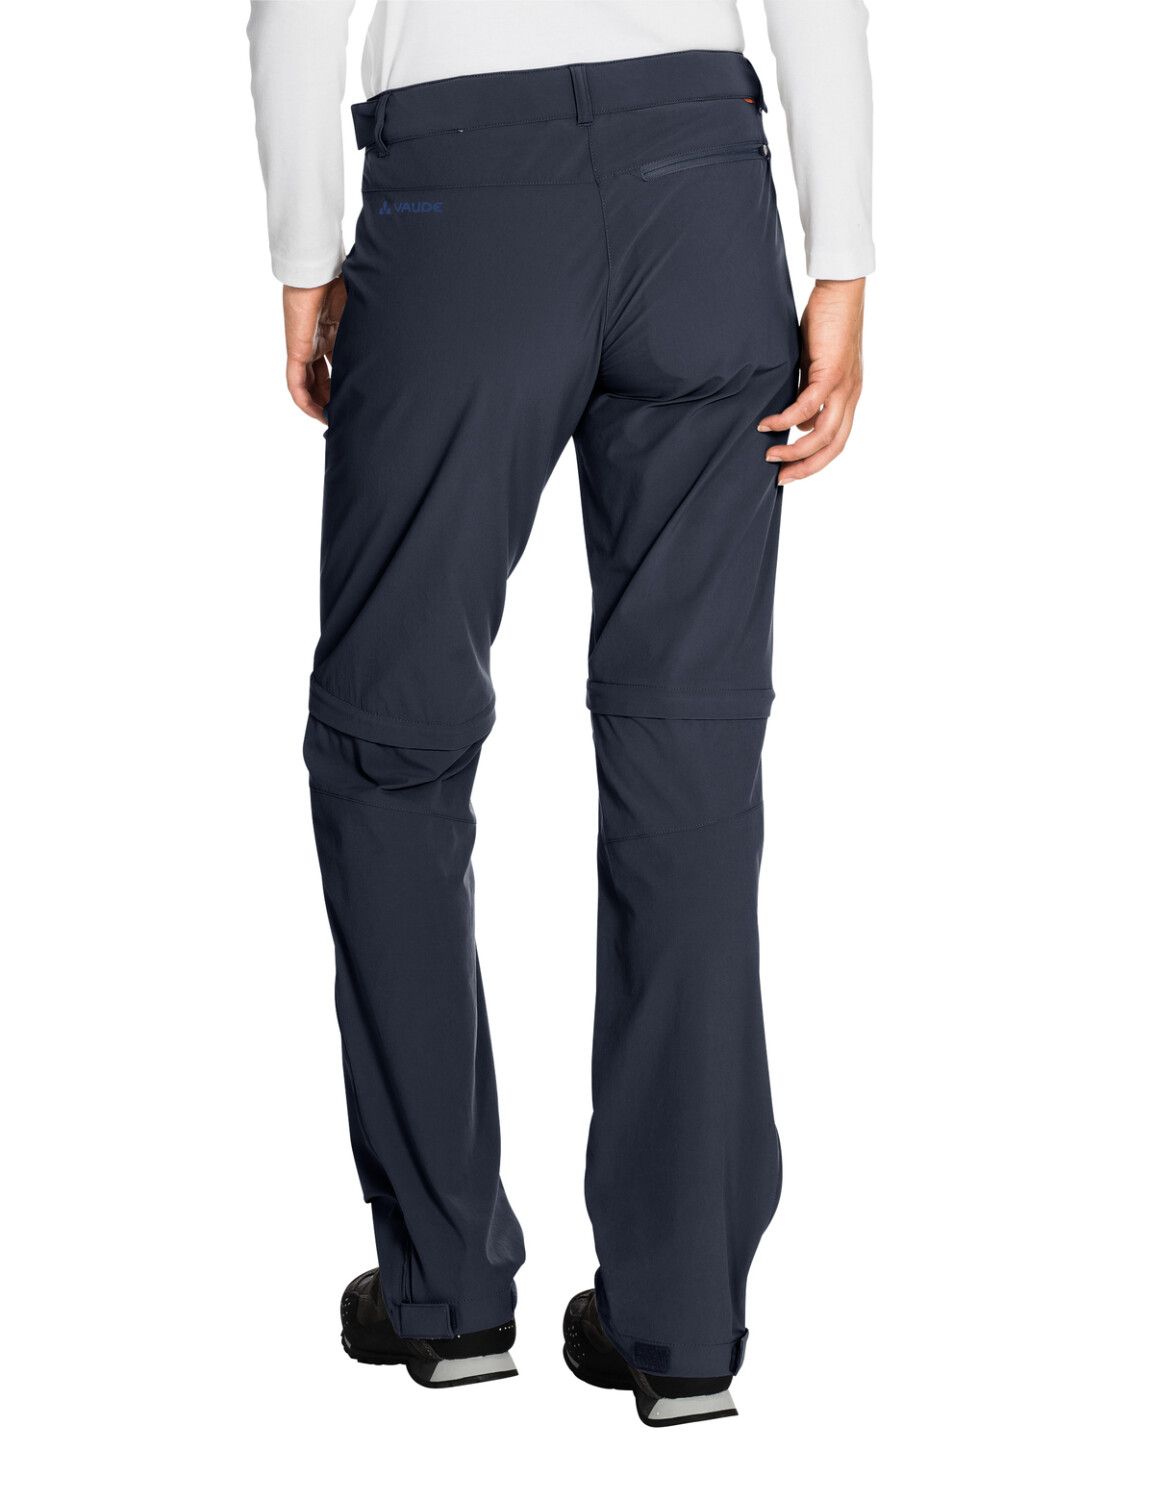 VAUDE Women's Farley Stretch ZO T-Zip Pants (Bild 55)